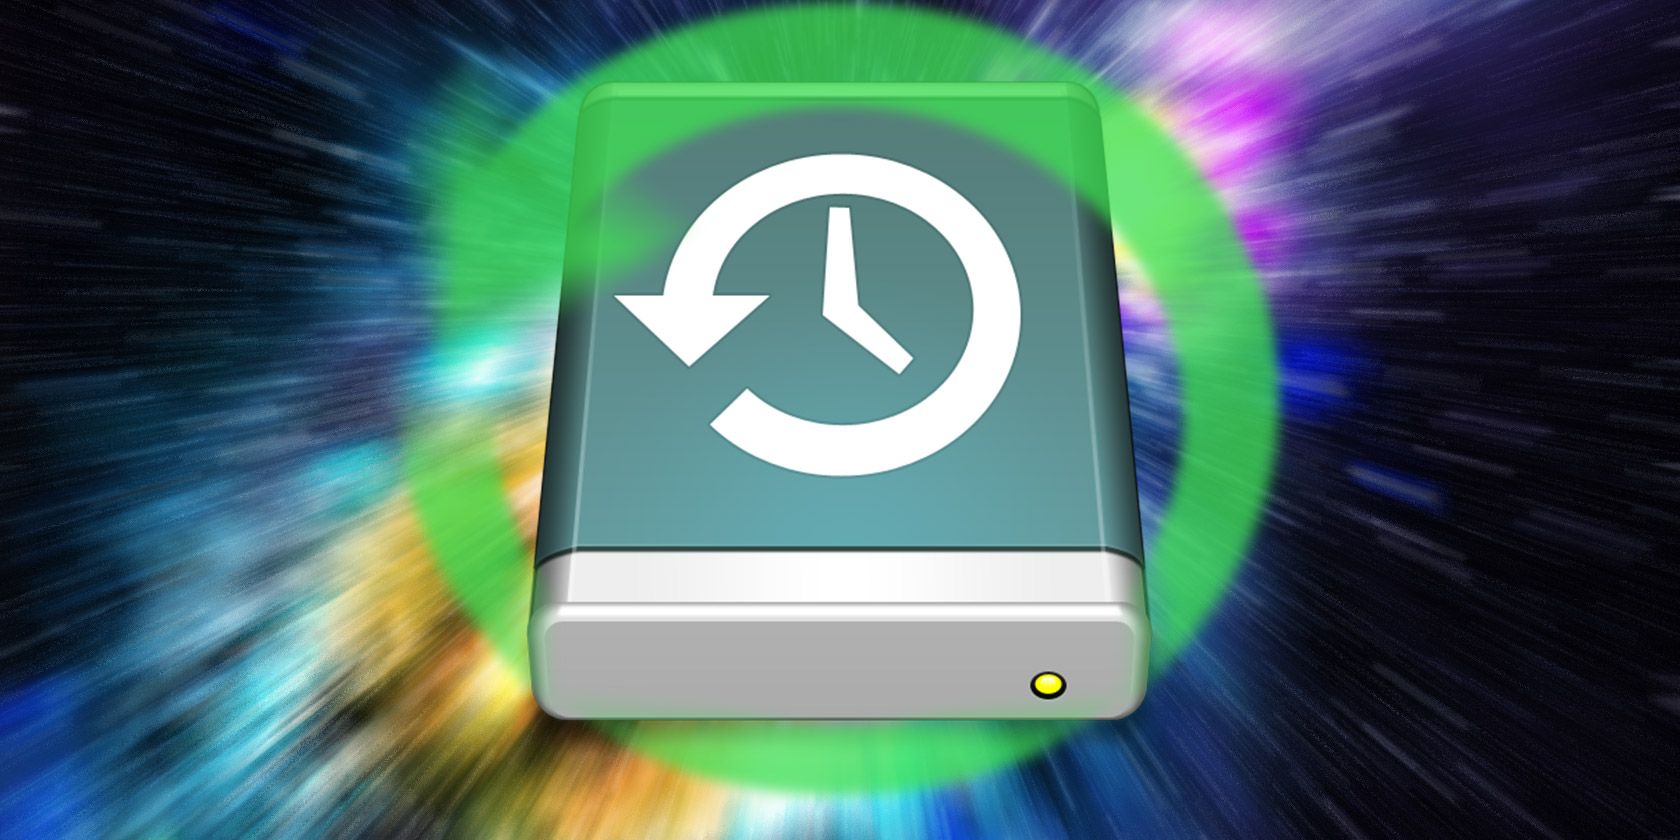 mac time machine restore